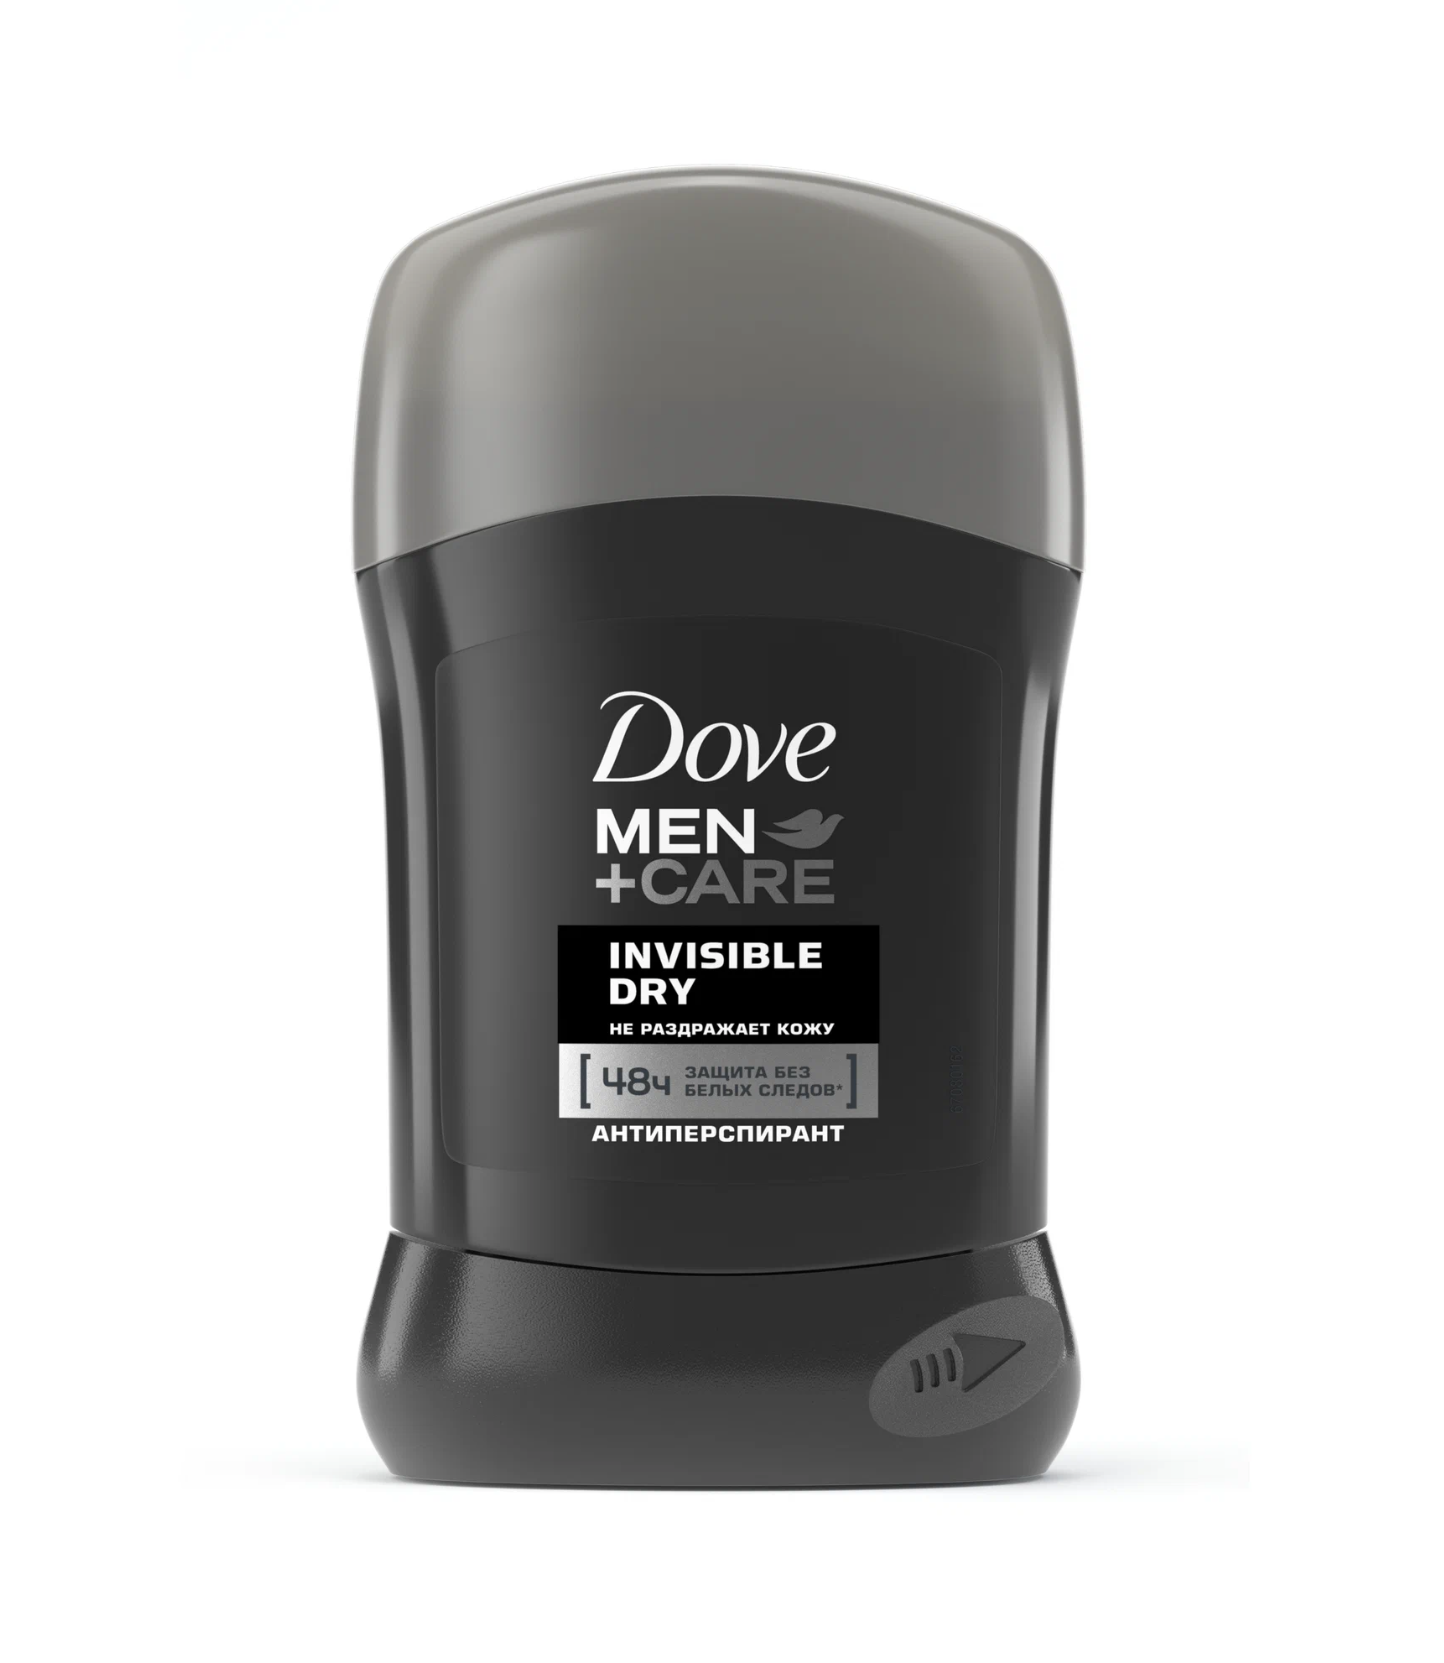   / Dove Men+Care - -   Invisible Dry 48 50 